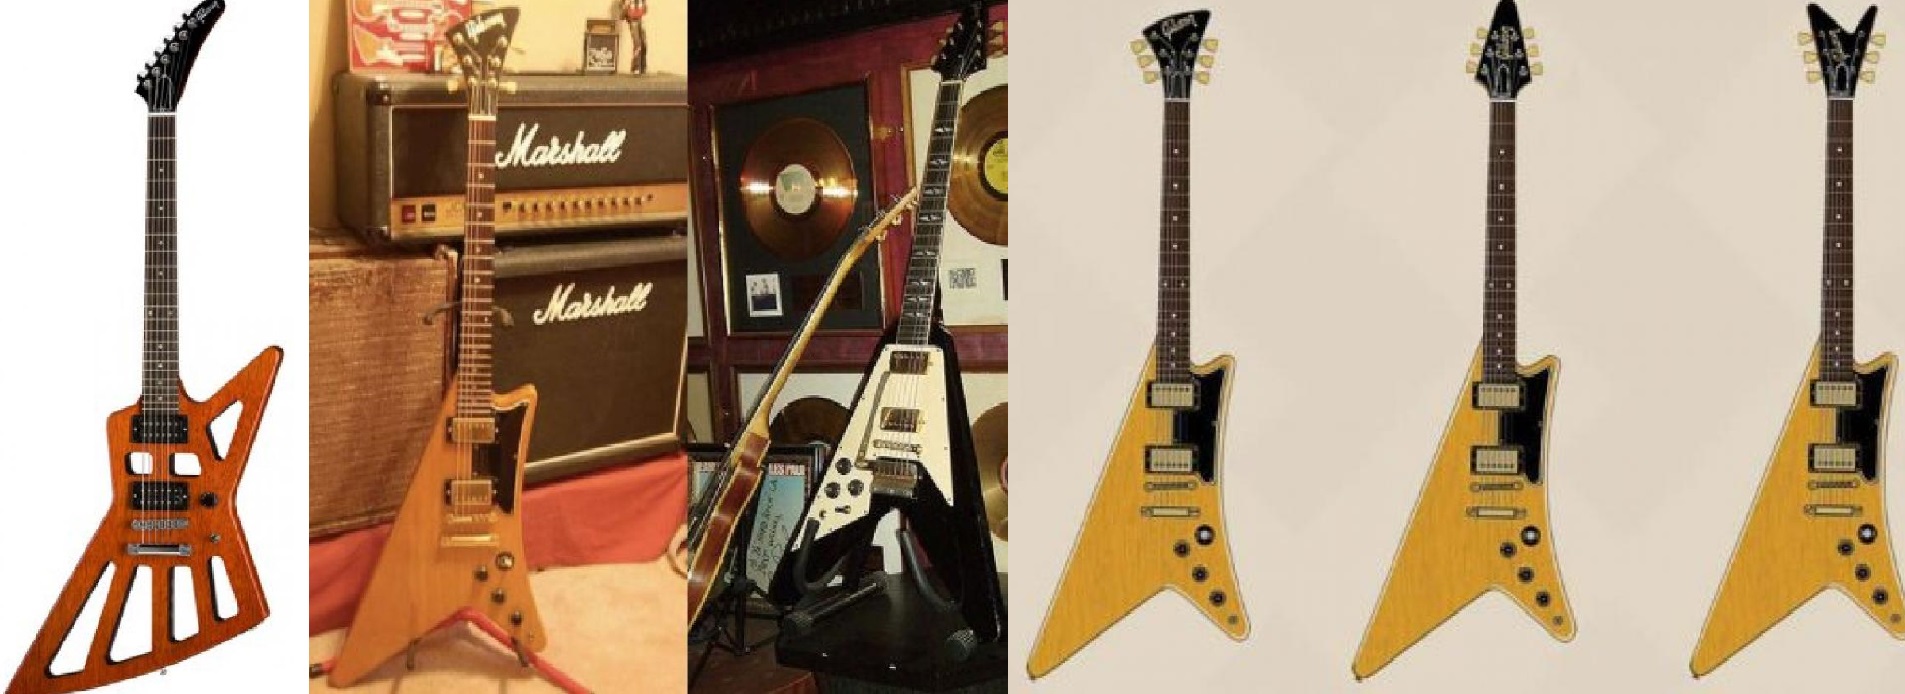 Gibson Futura, la chitarra che ha subito più cambiamenti di forma della storia!